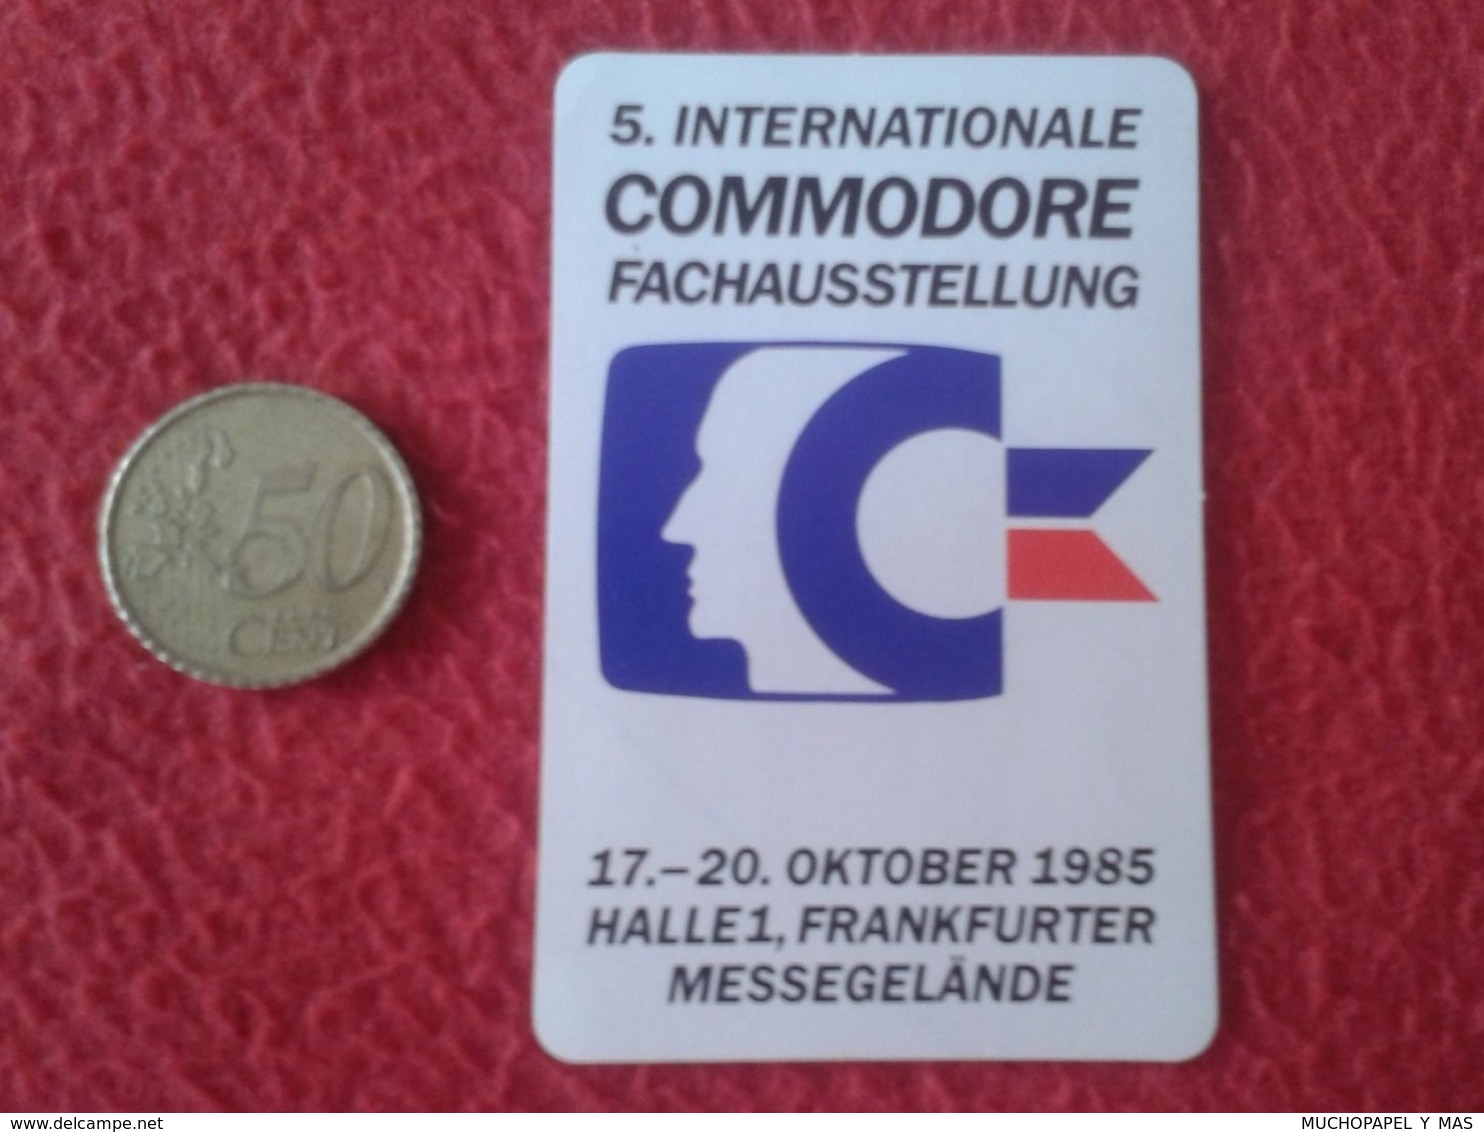 PEGATINA STICKER 5. INTERNATIONALE COMMODORE FACHAUSSTELLUNG 1985 HALLE 1 FRANKFURTER MESSEGELÄNDE VER FOTO/S Y DESCRIPC - Stickers